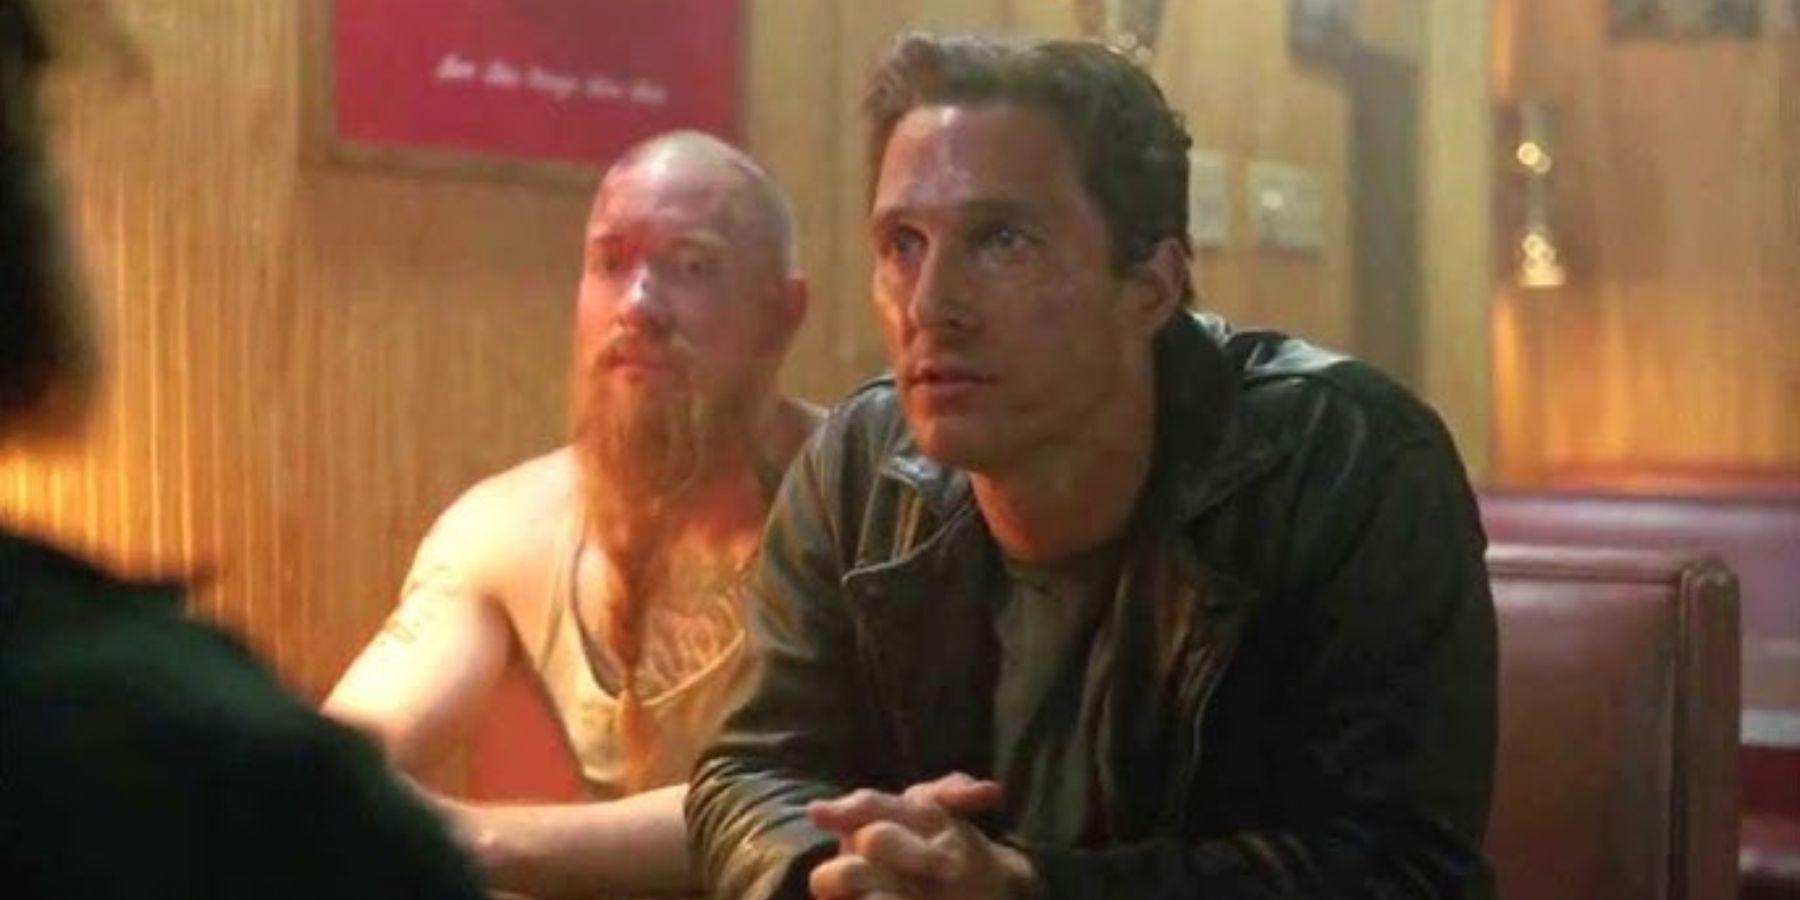 Ginger (Joseph Sikora) and Rust (Matthew McConaughey) in True Detective